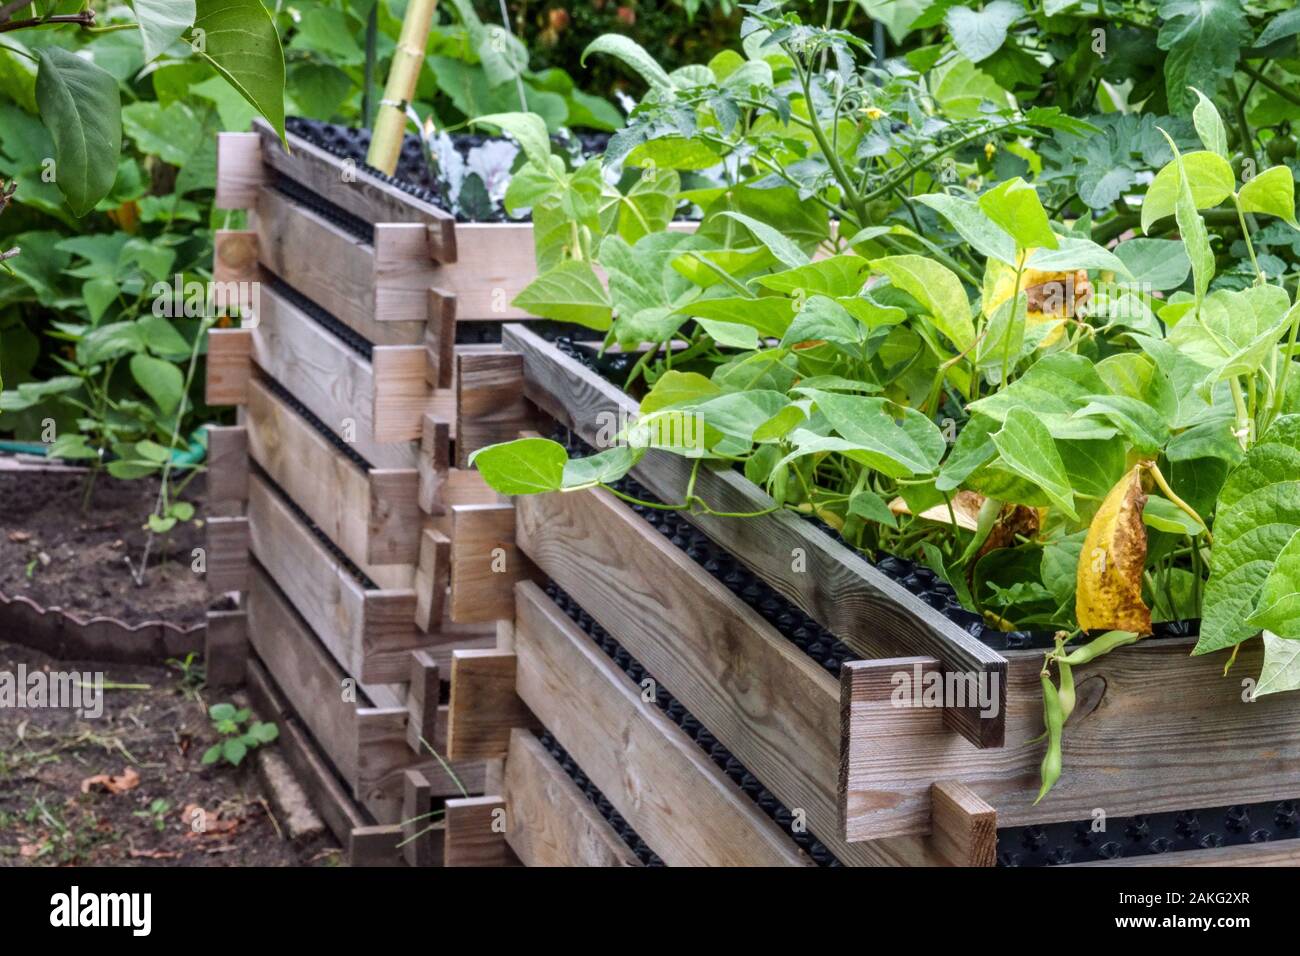 Anottment Gartenarbeit zwei hölzerne Hochbett Garten Stockfoto